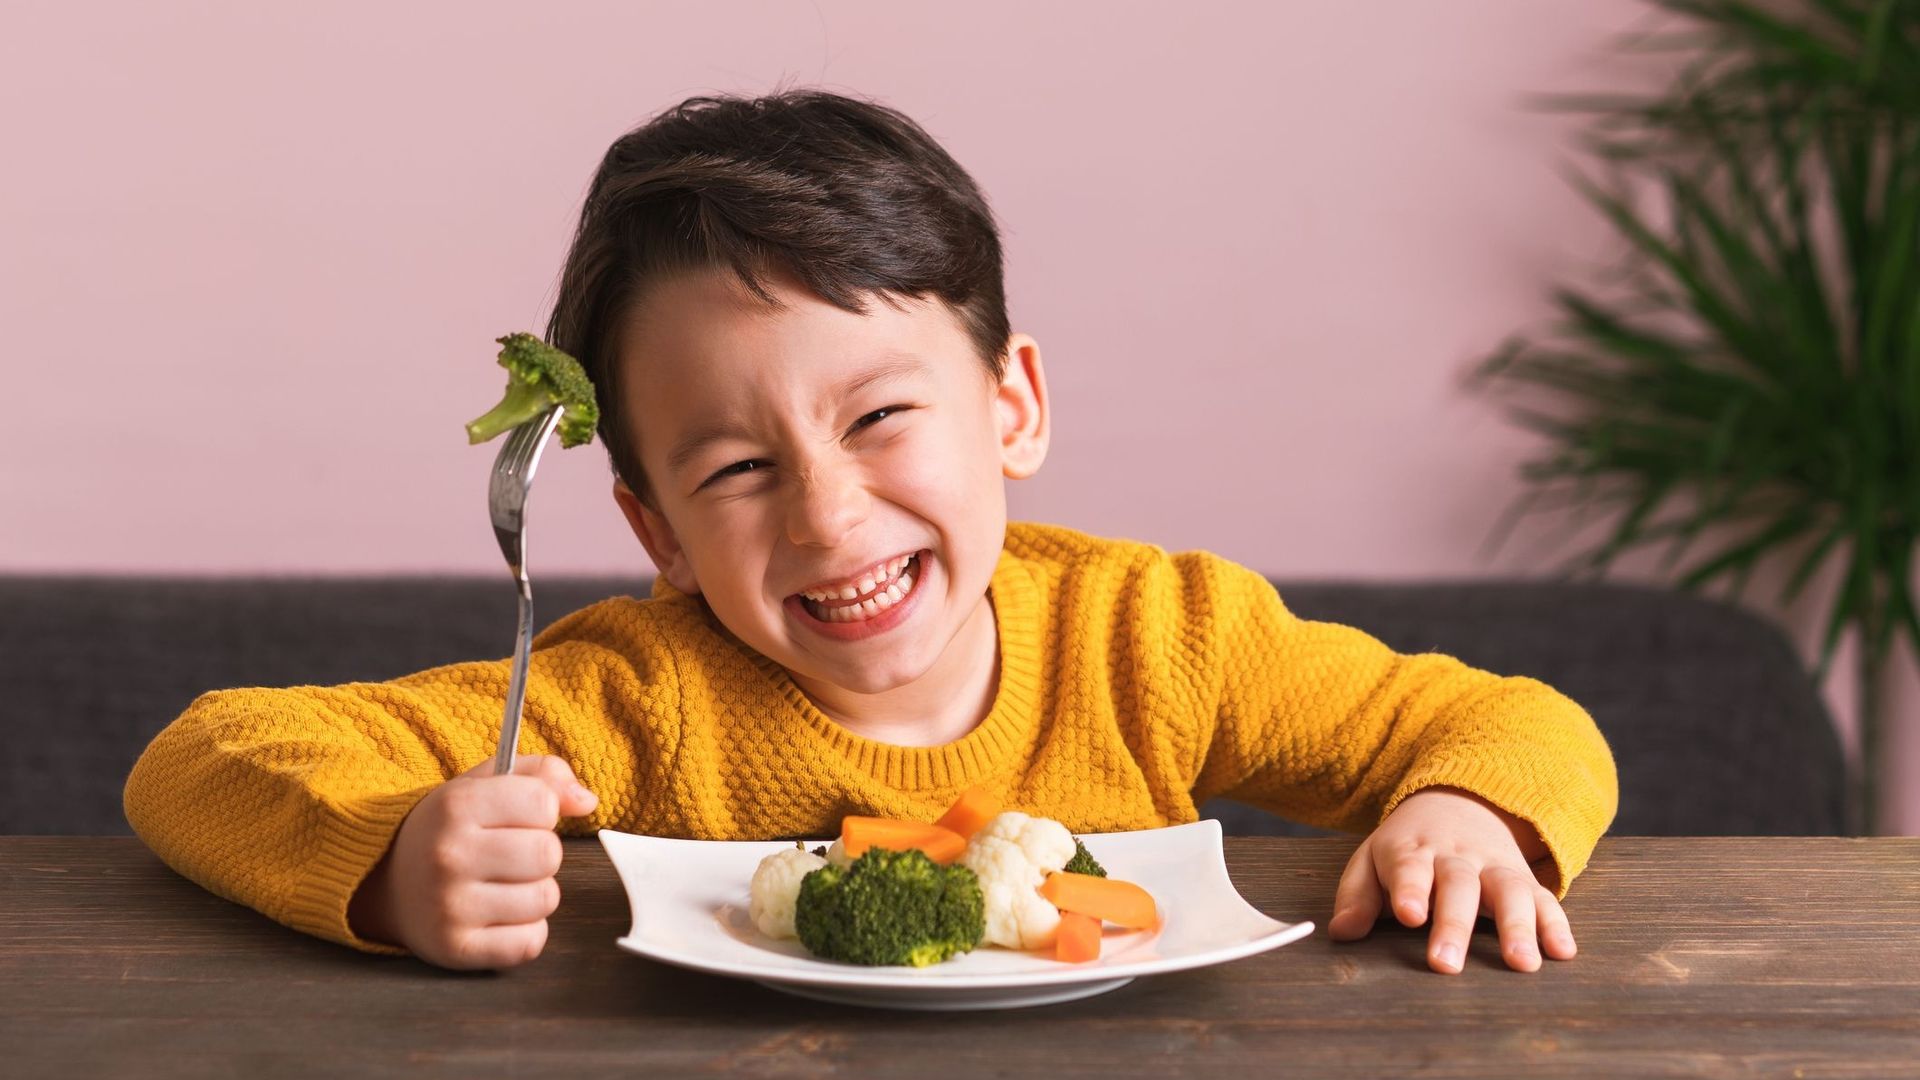 Regarder des émissions culinaires inciterait davantage les enfants à manger sainement.